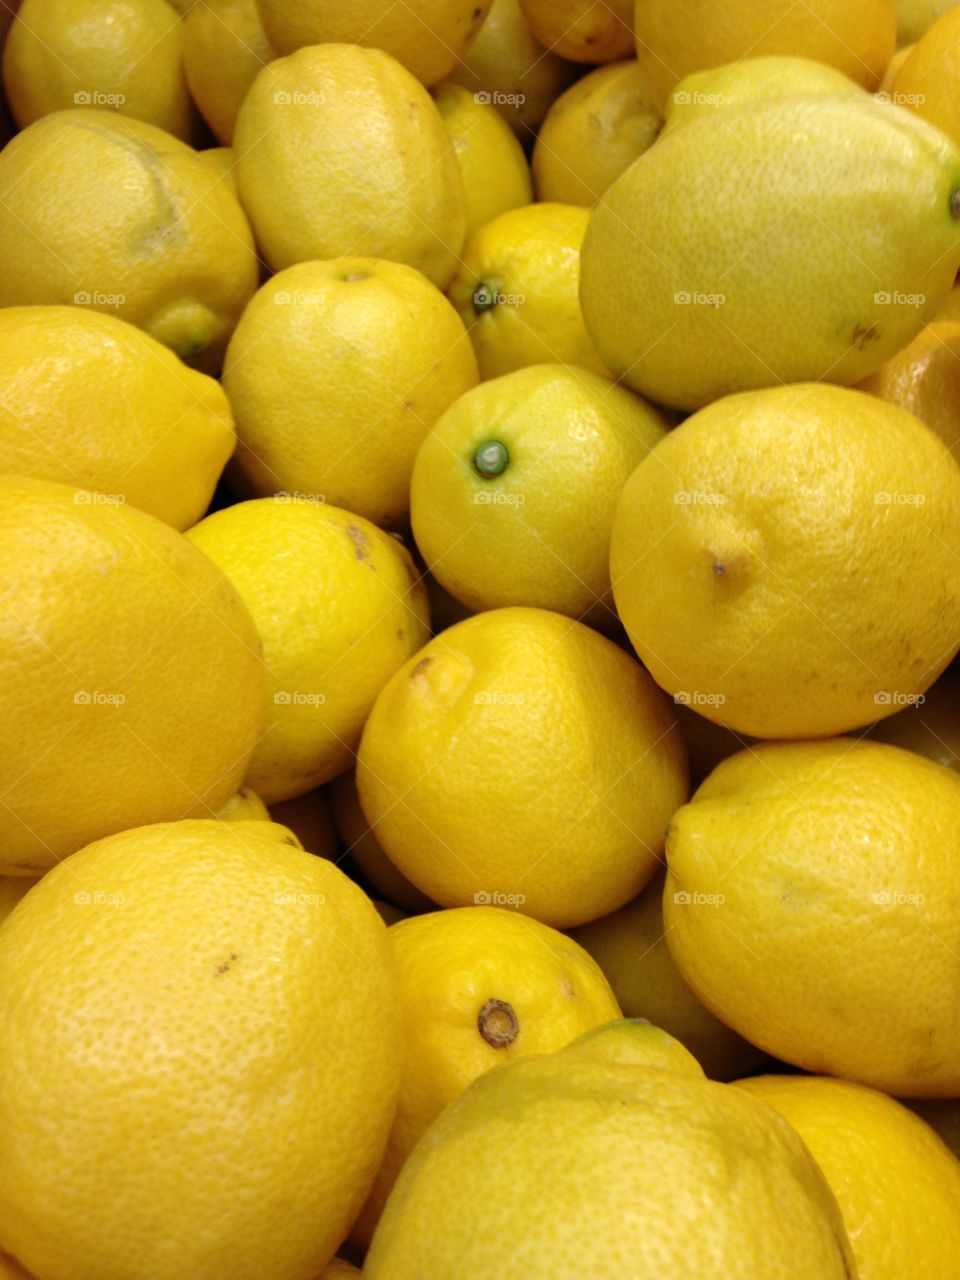 Lemony yellow. Lemons